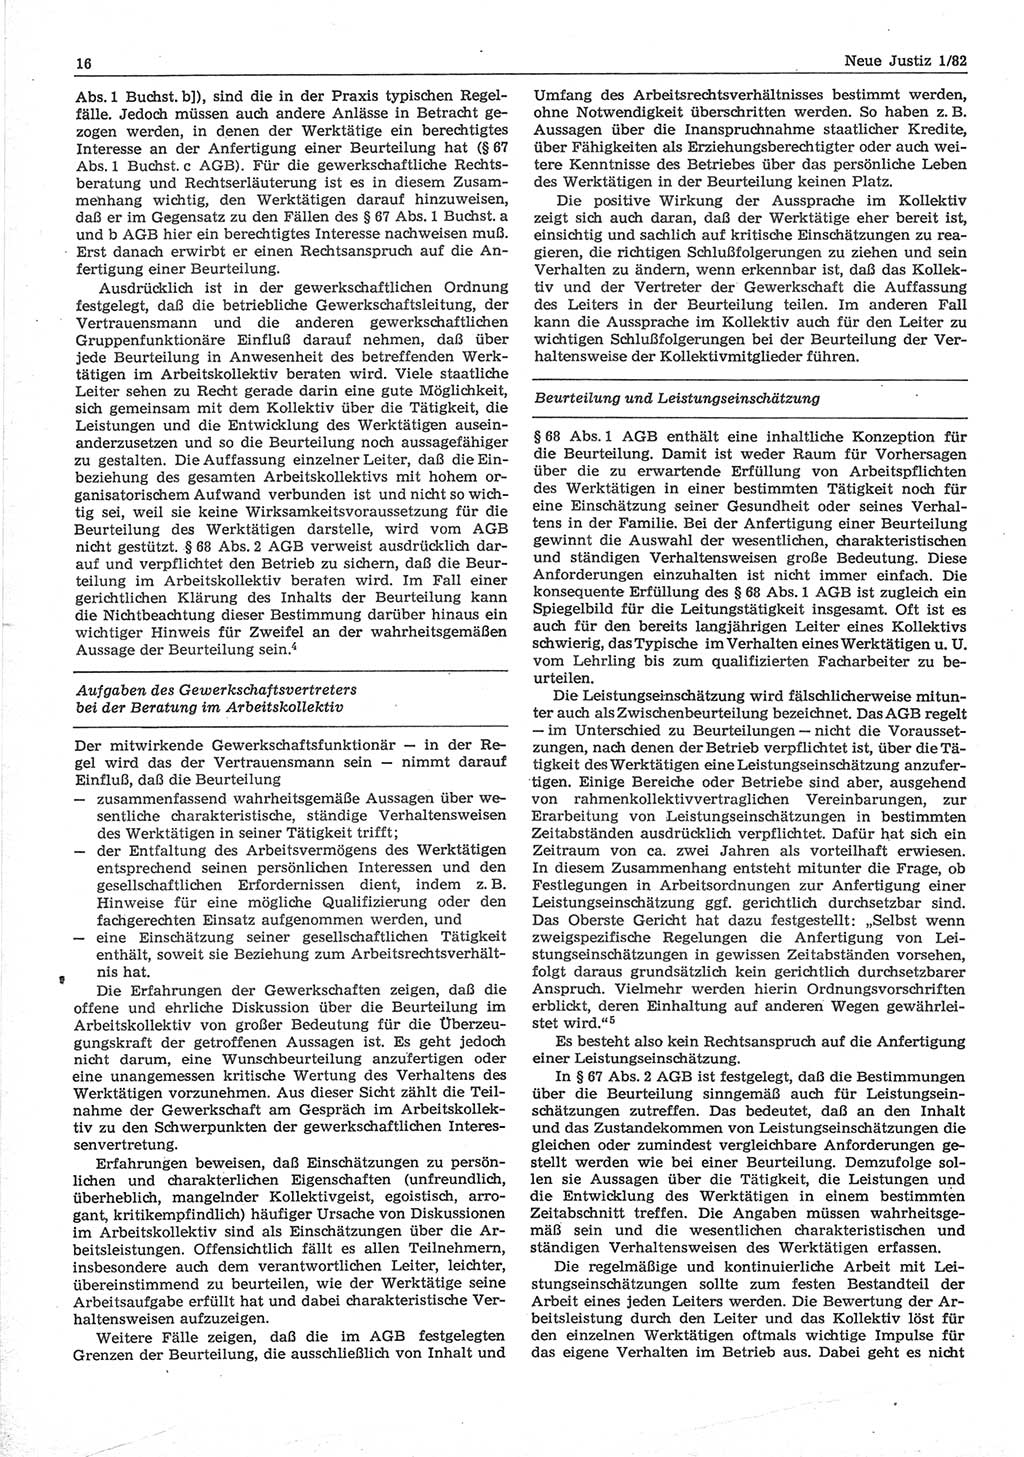 Neue Justiz (NJ), Zeitschrift für sozialistisches Recht und Gesetzlichkeit [Deutsche Demokratische Republik (DDR)], 36. Jahrgang 1982, Seite 16 (NJ DDR 1982, S. 16)